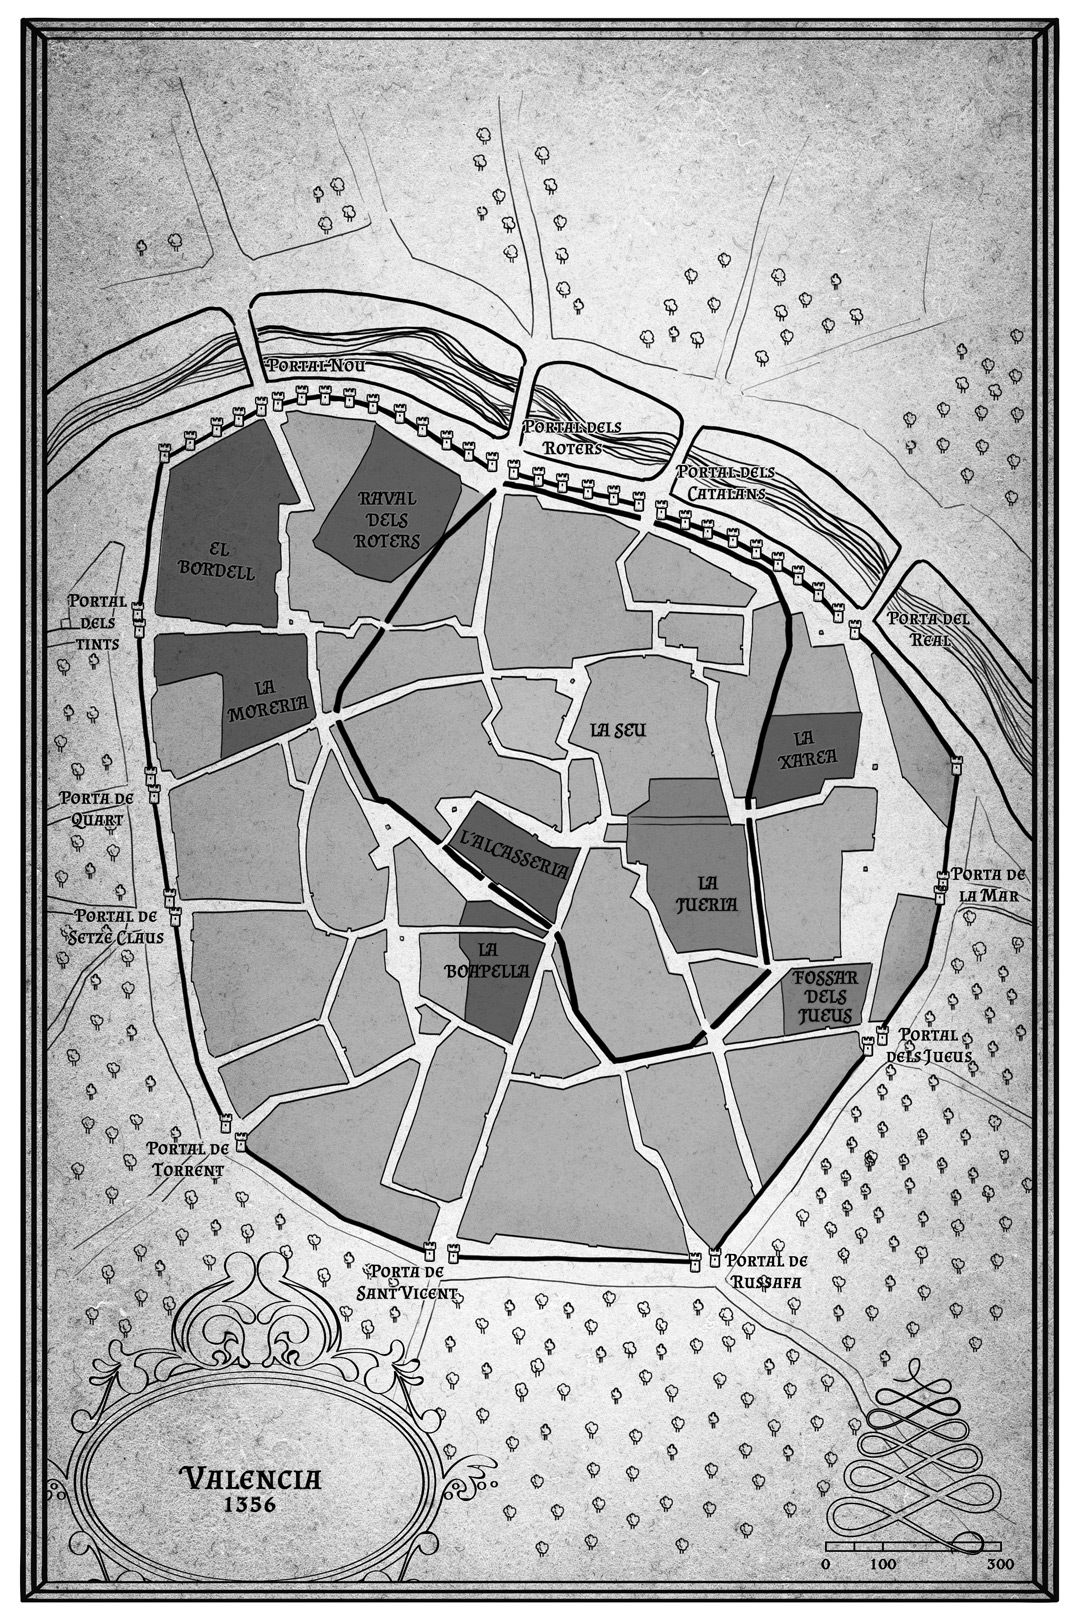 Mapa-violant-1356-pablo-uria-ilustrador-mapas